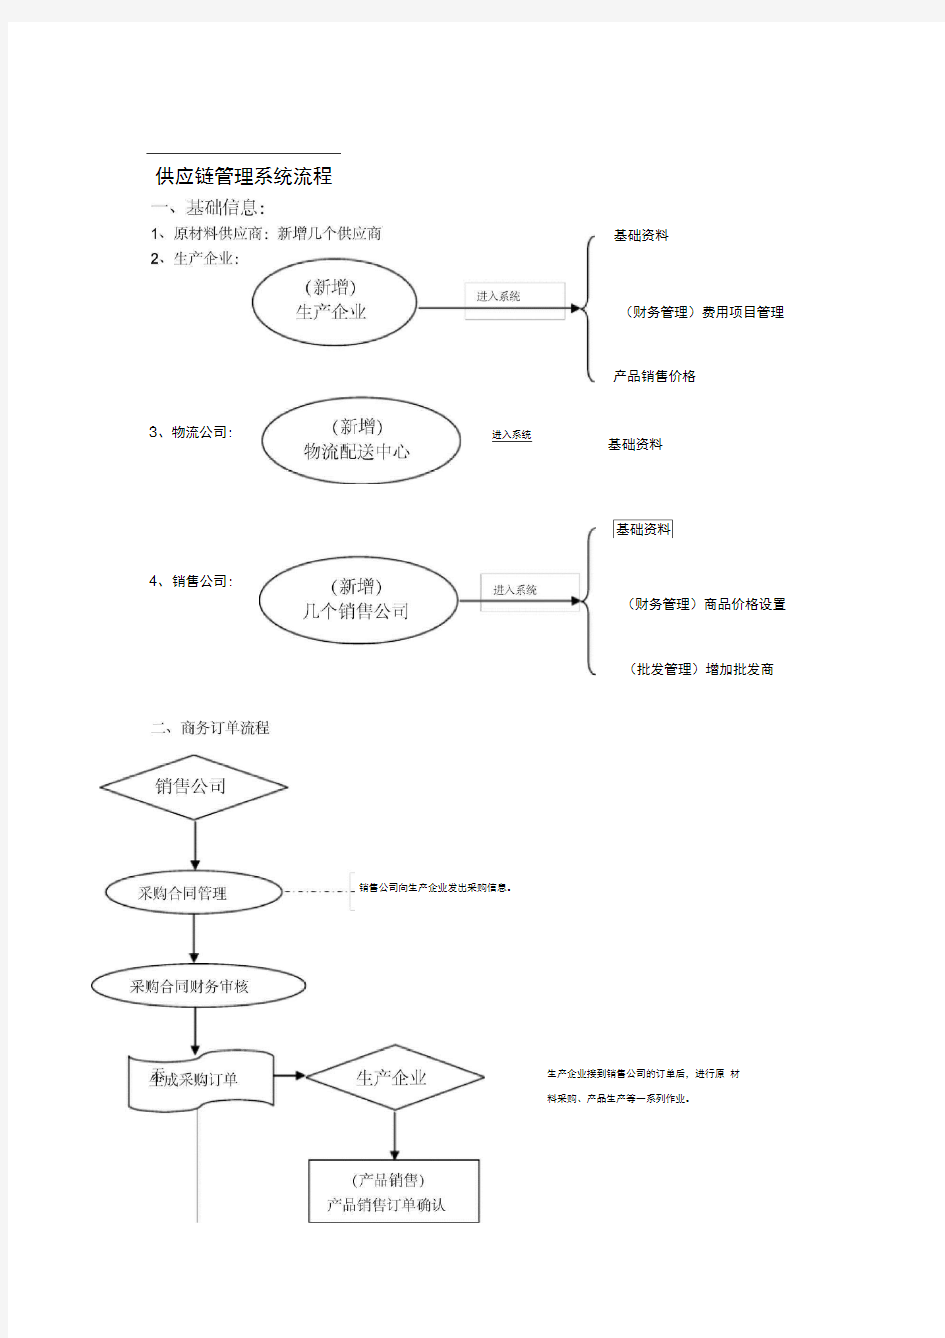 企业供应链详细管理流程图